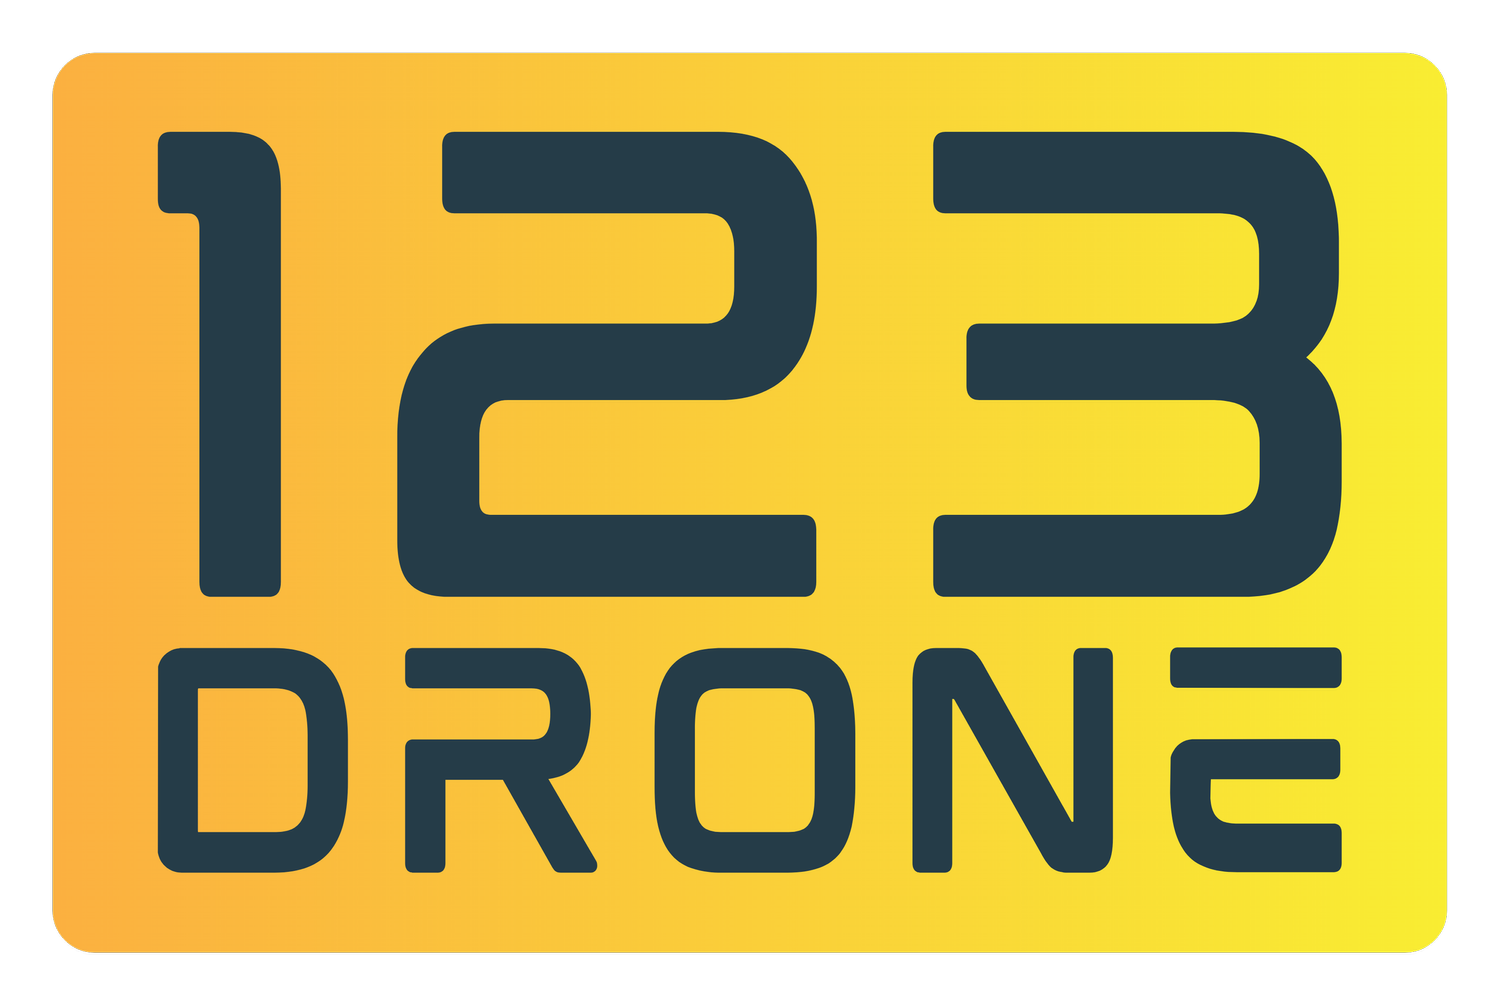 123 Drone